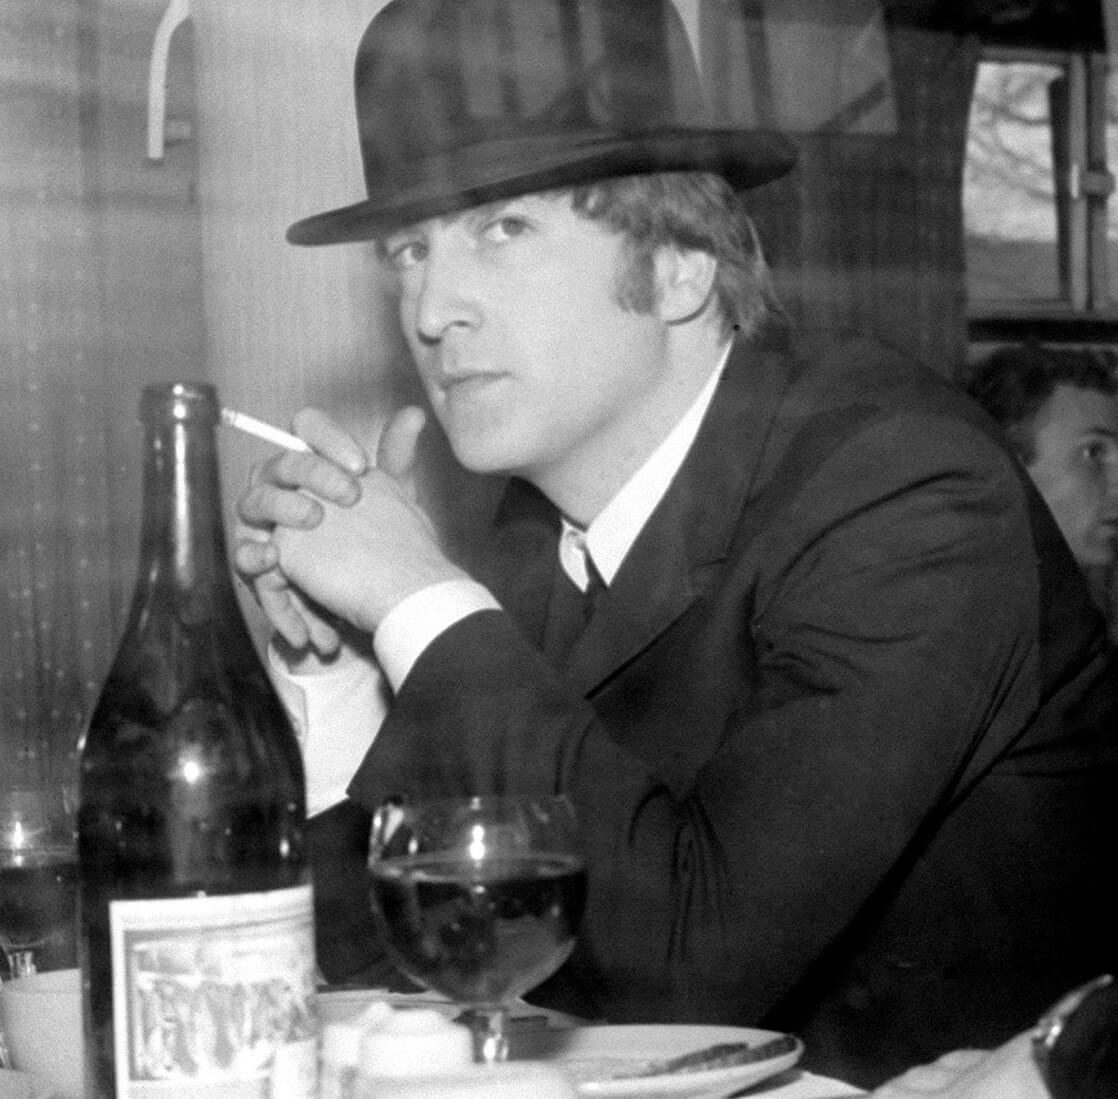 John Lennon wearing a hat